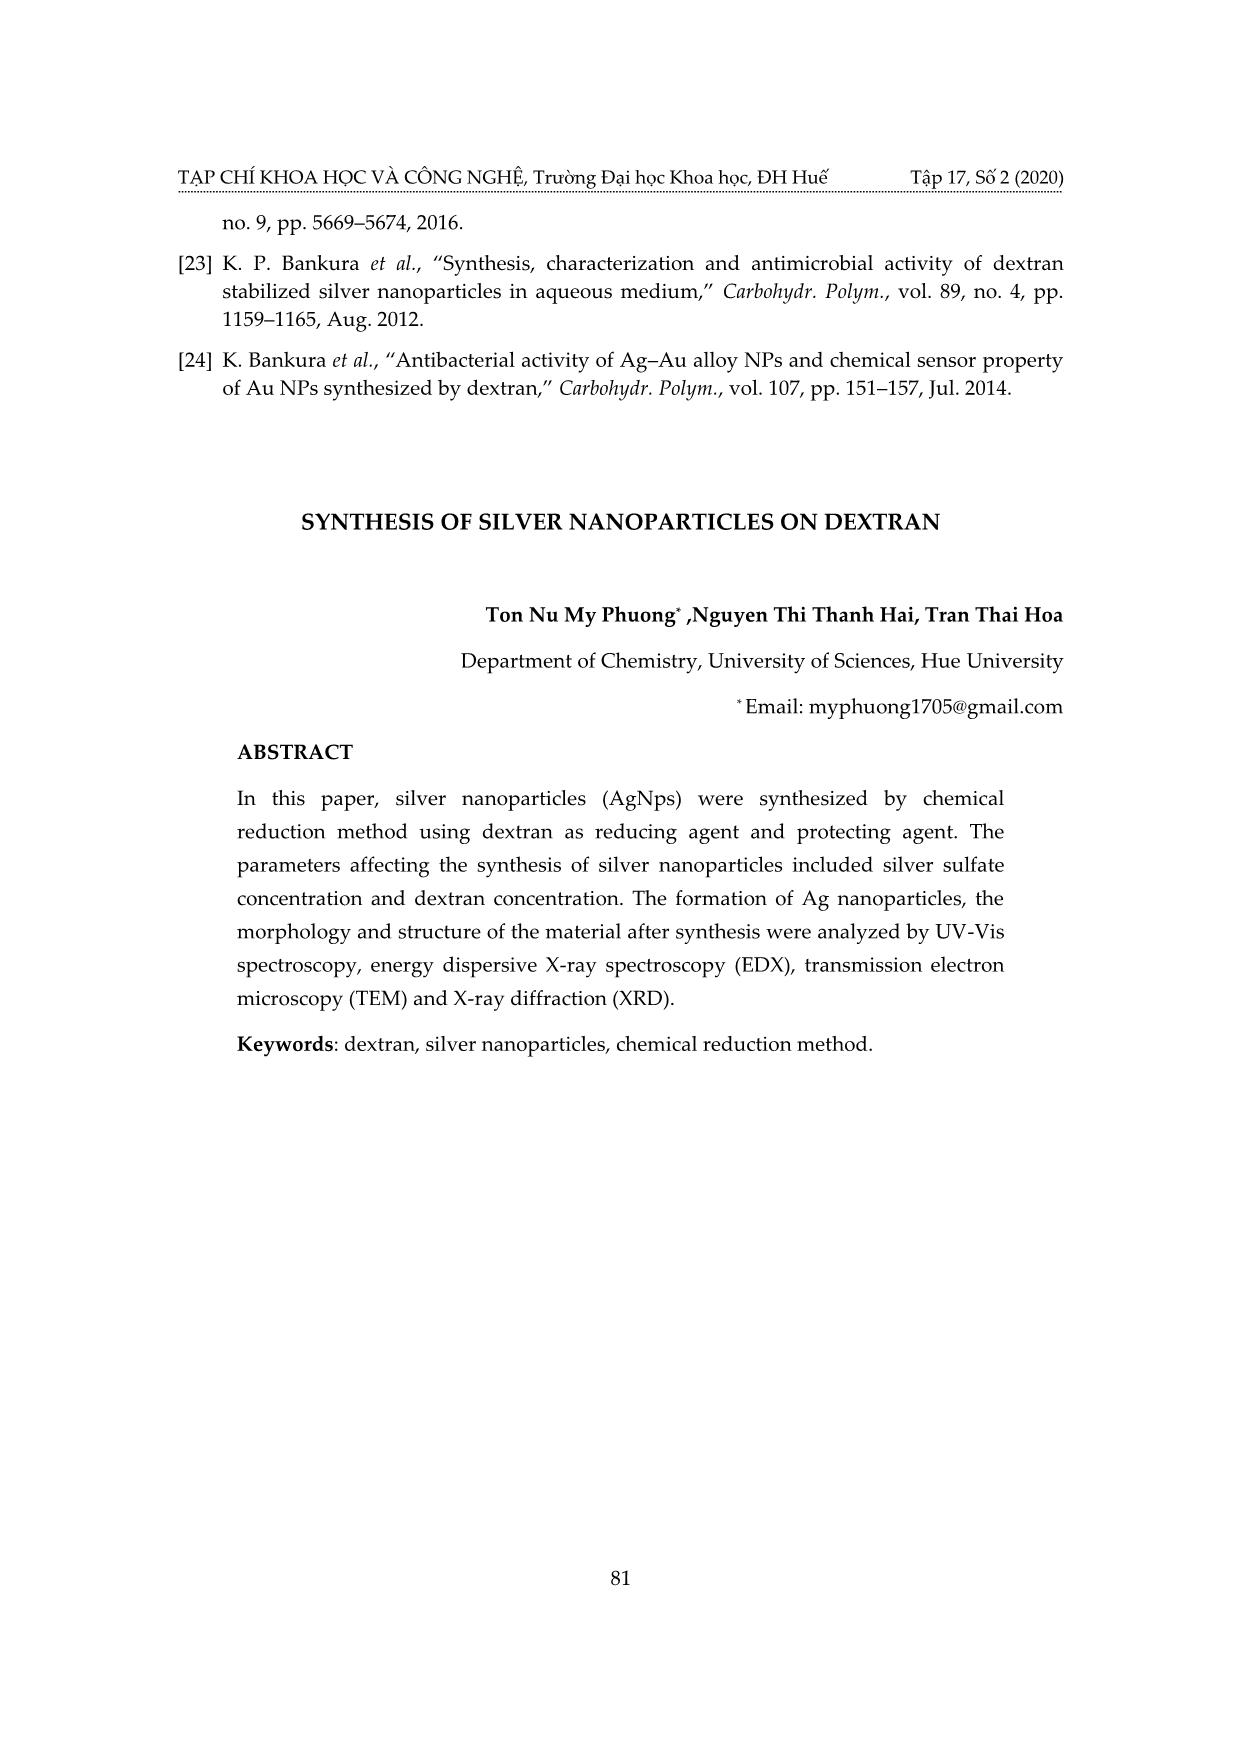 Nghiên cứu điều chế nano AG trên nền dextran trang 9